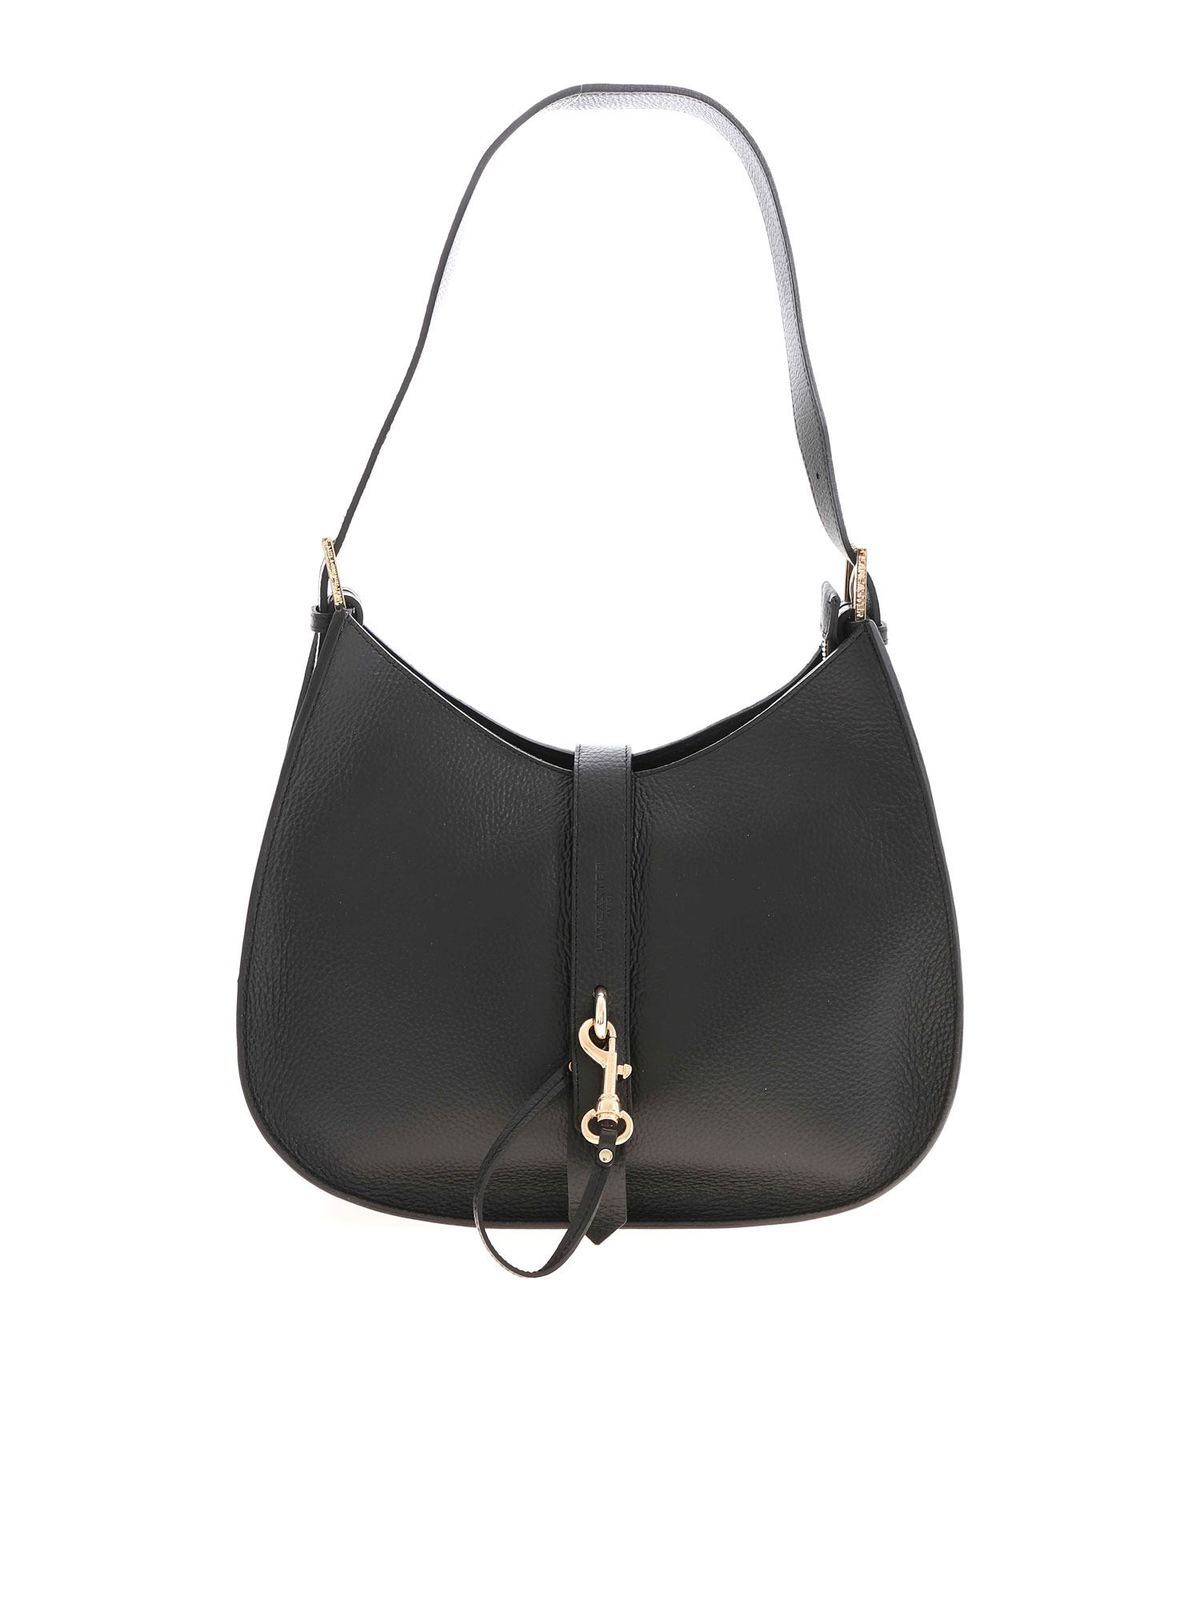 Shoulder Bag 5140125-95 - OEM Black and Decker 